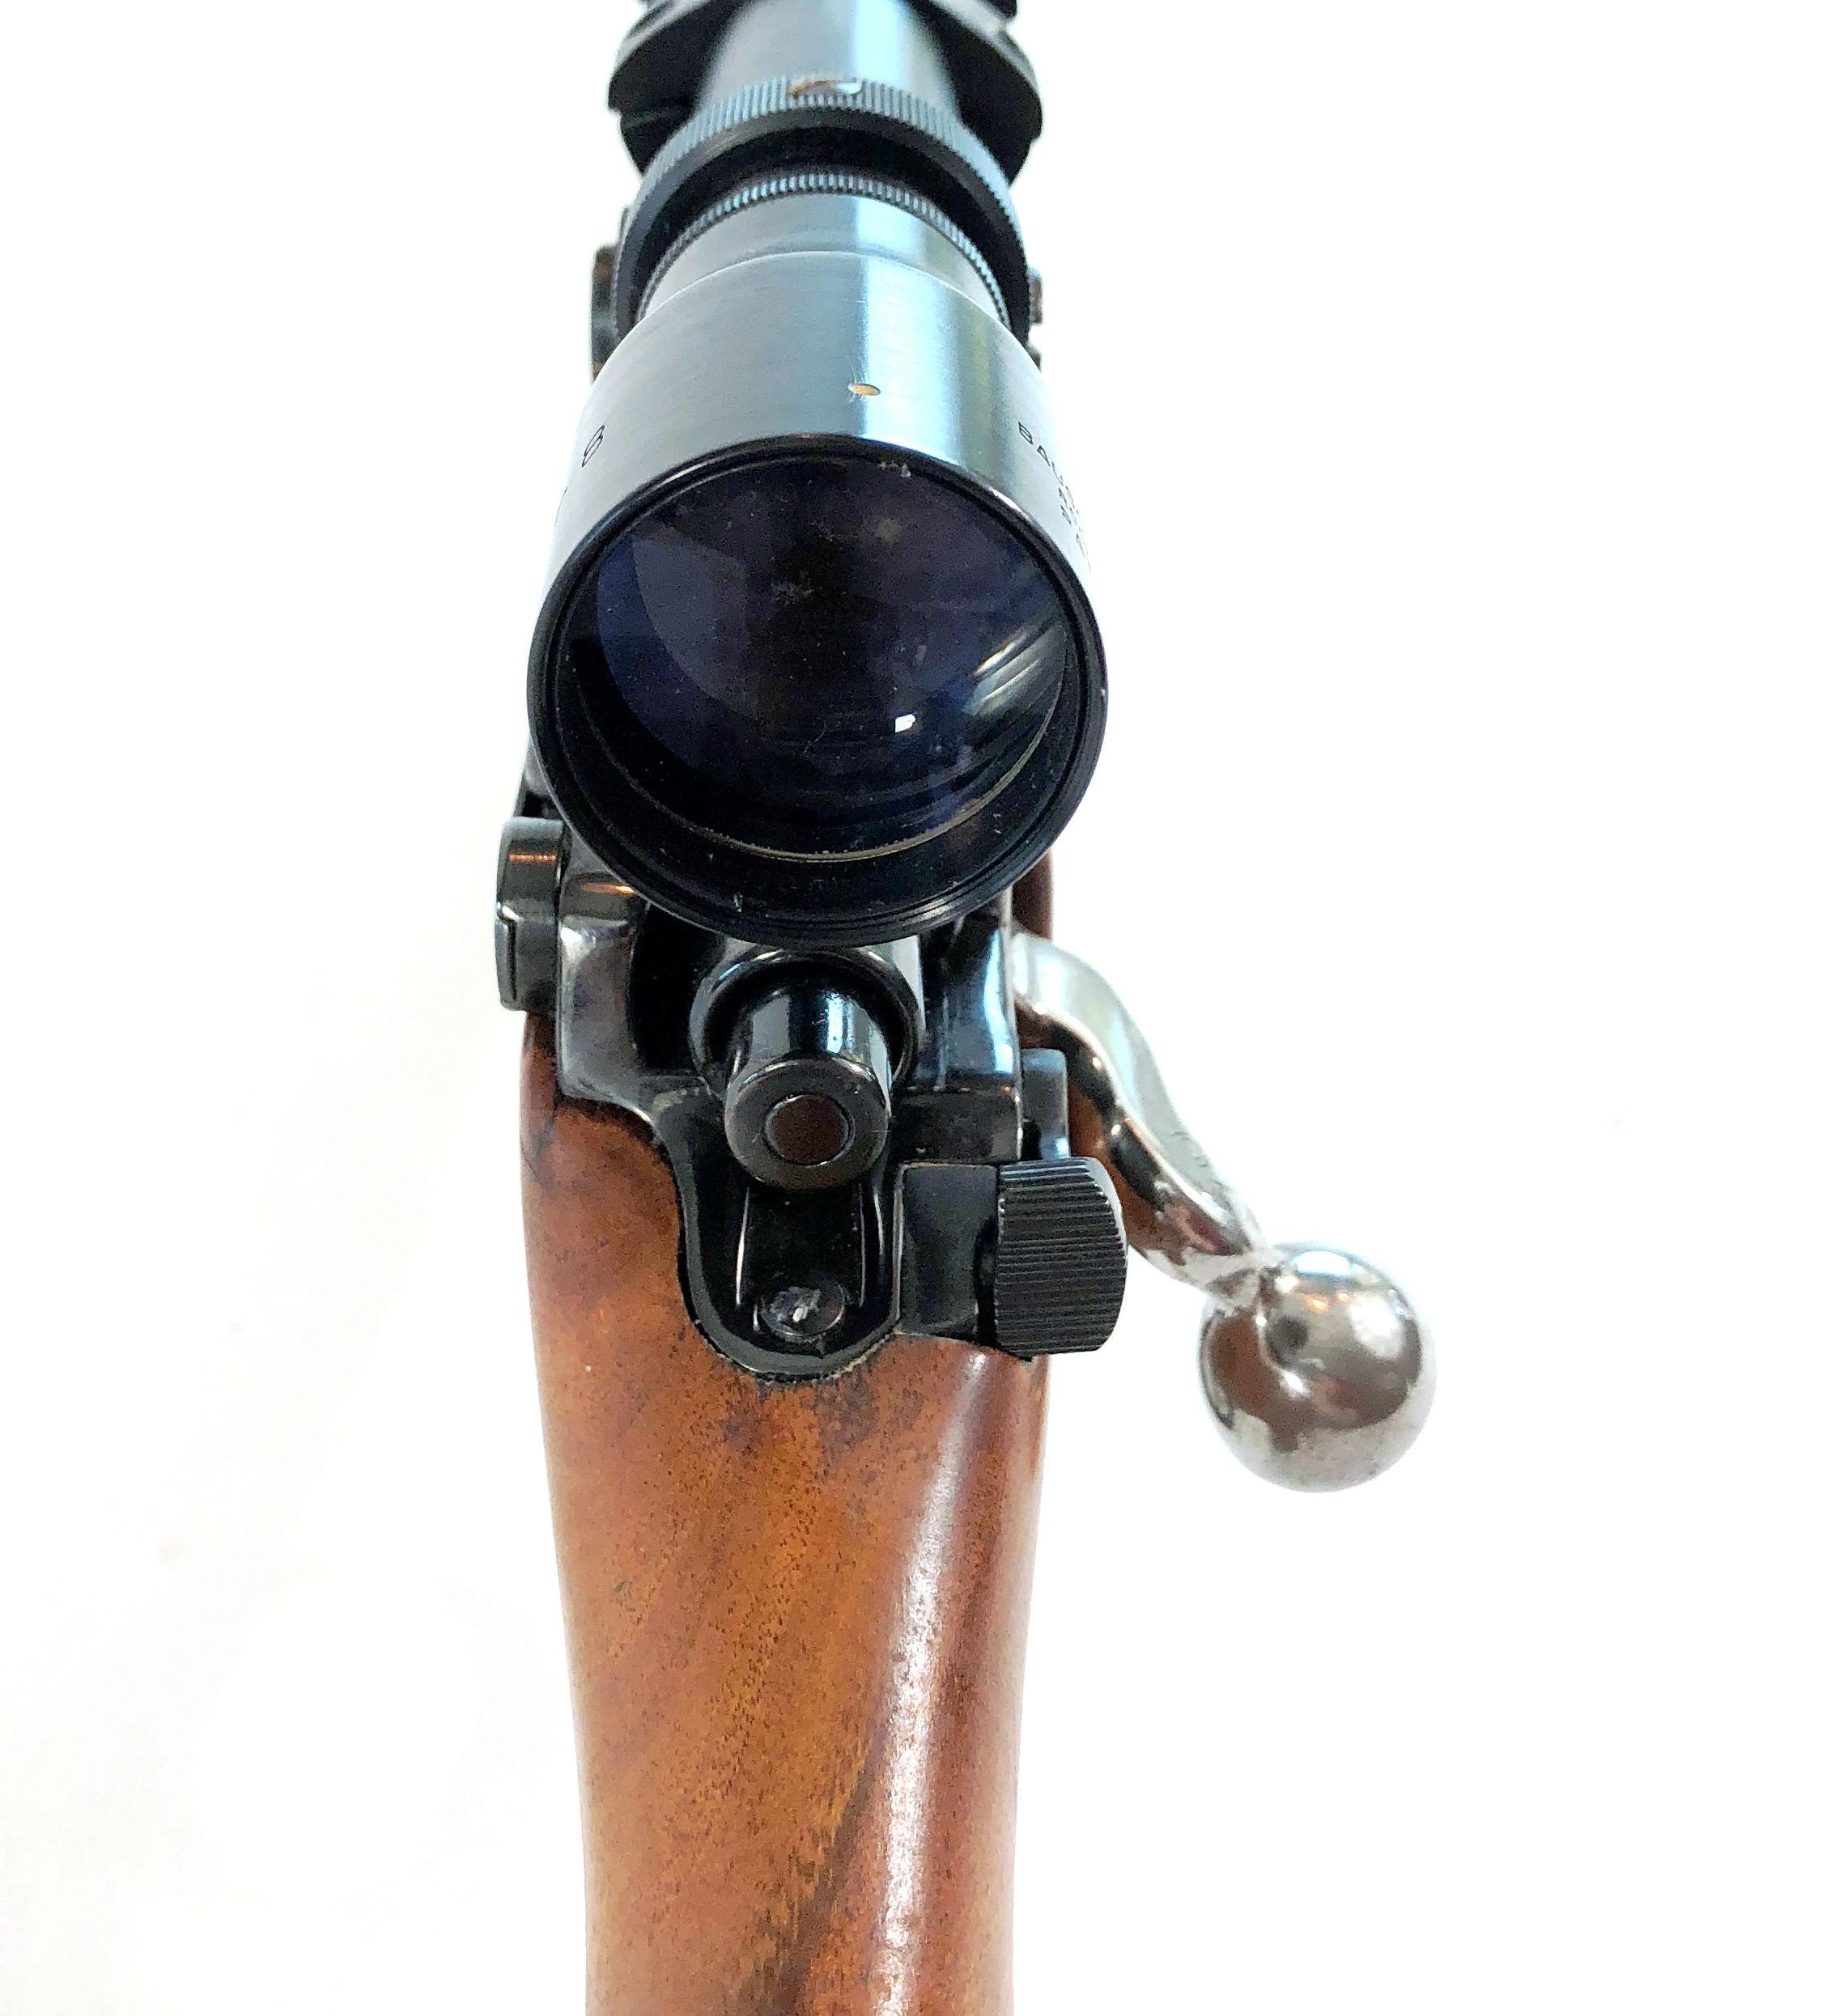 Custom Built Bolt Action Gun Caliber 30-06 Rifle with Bausch & Lomb Scope